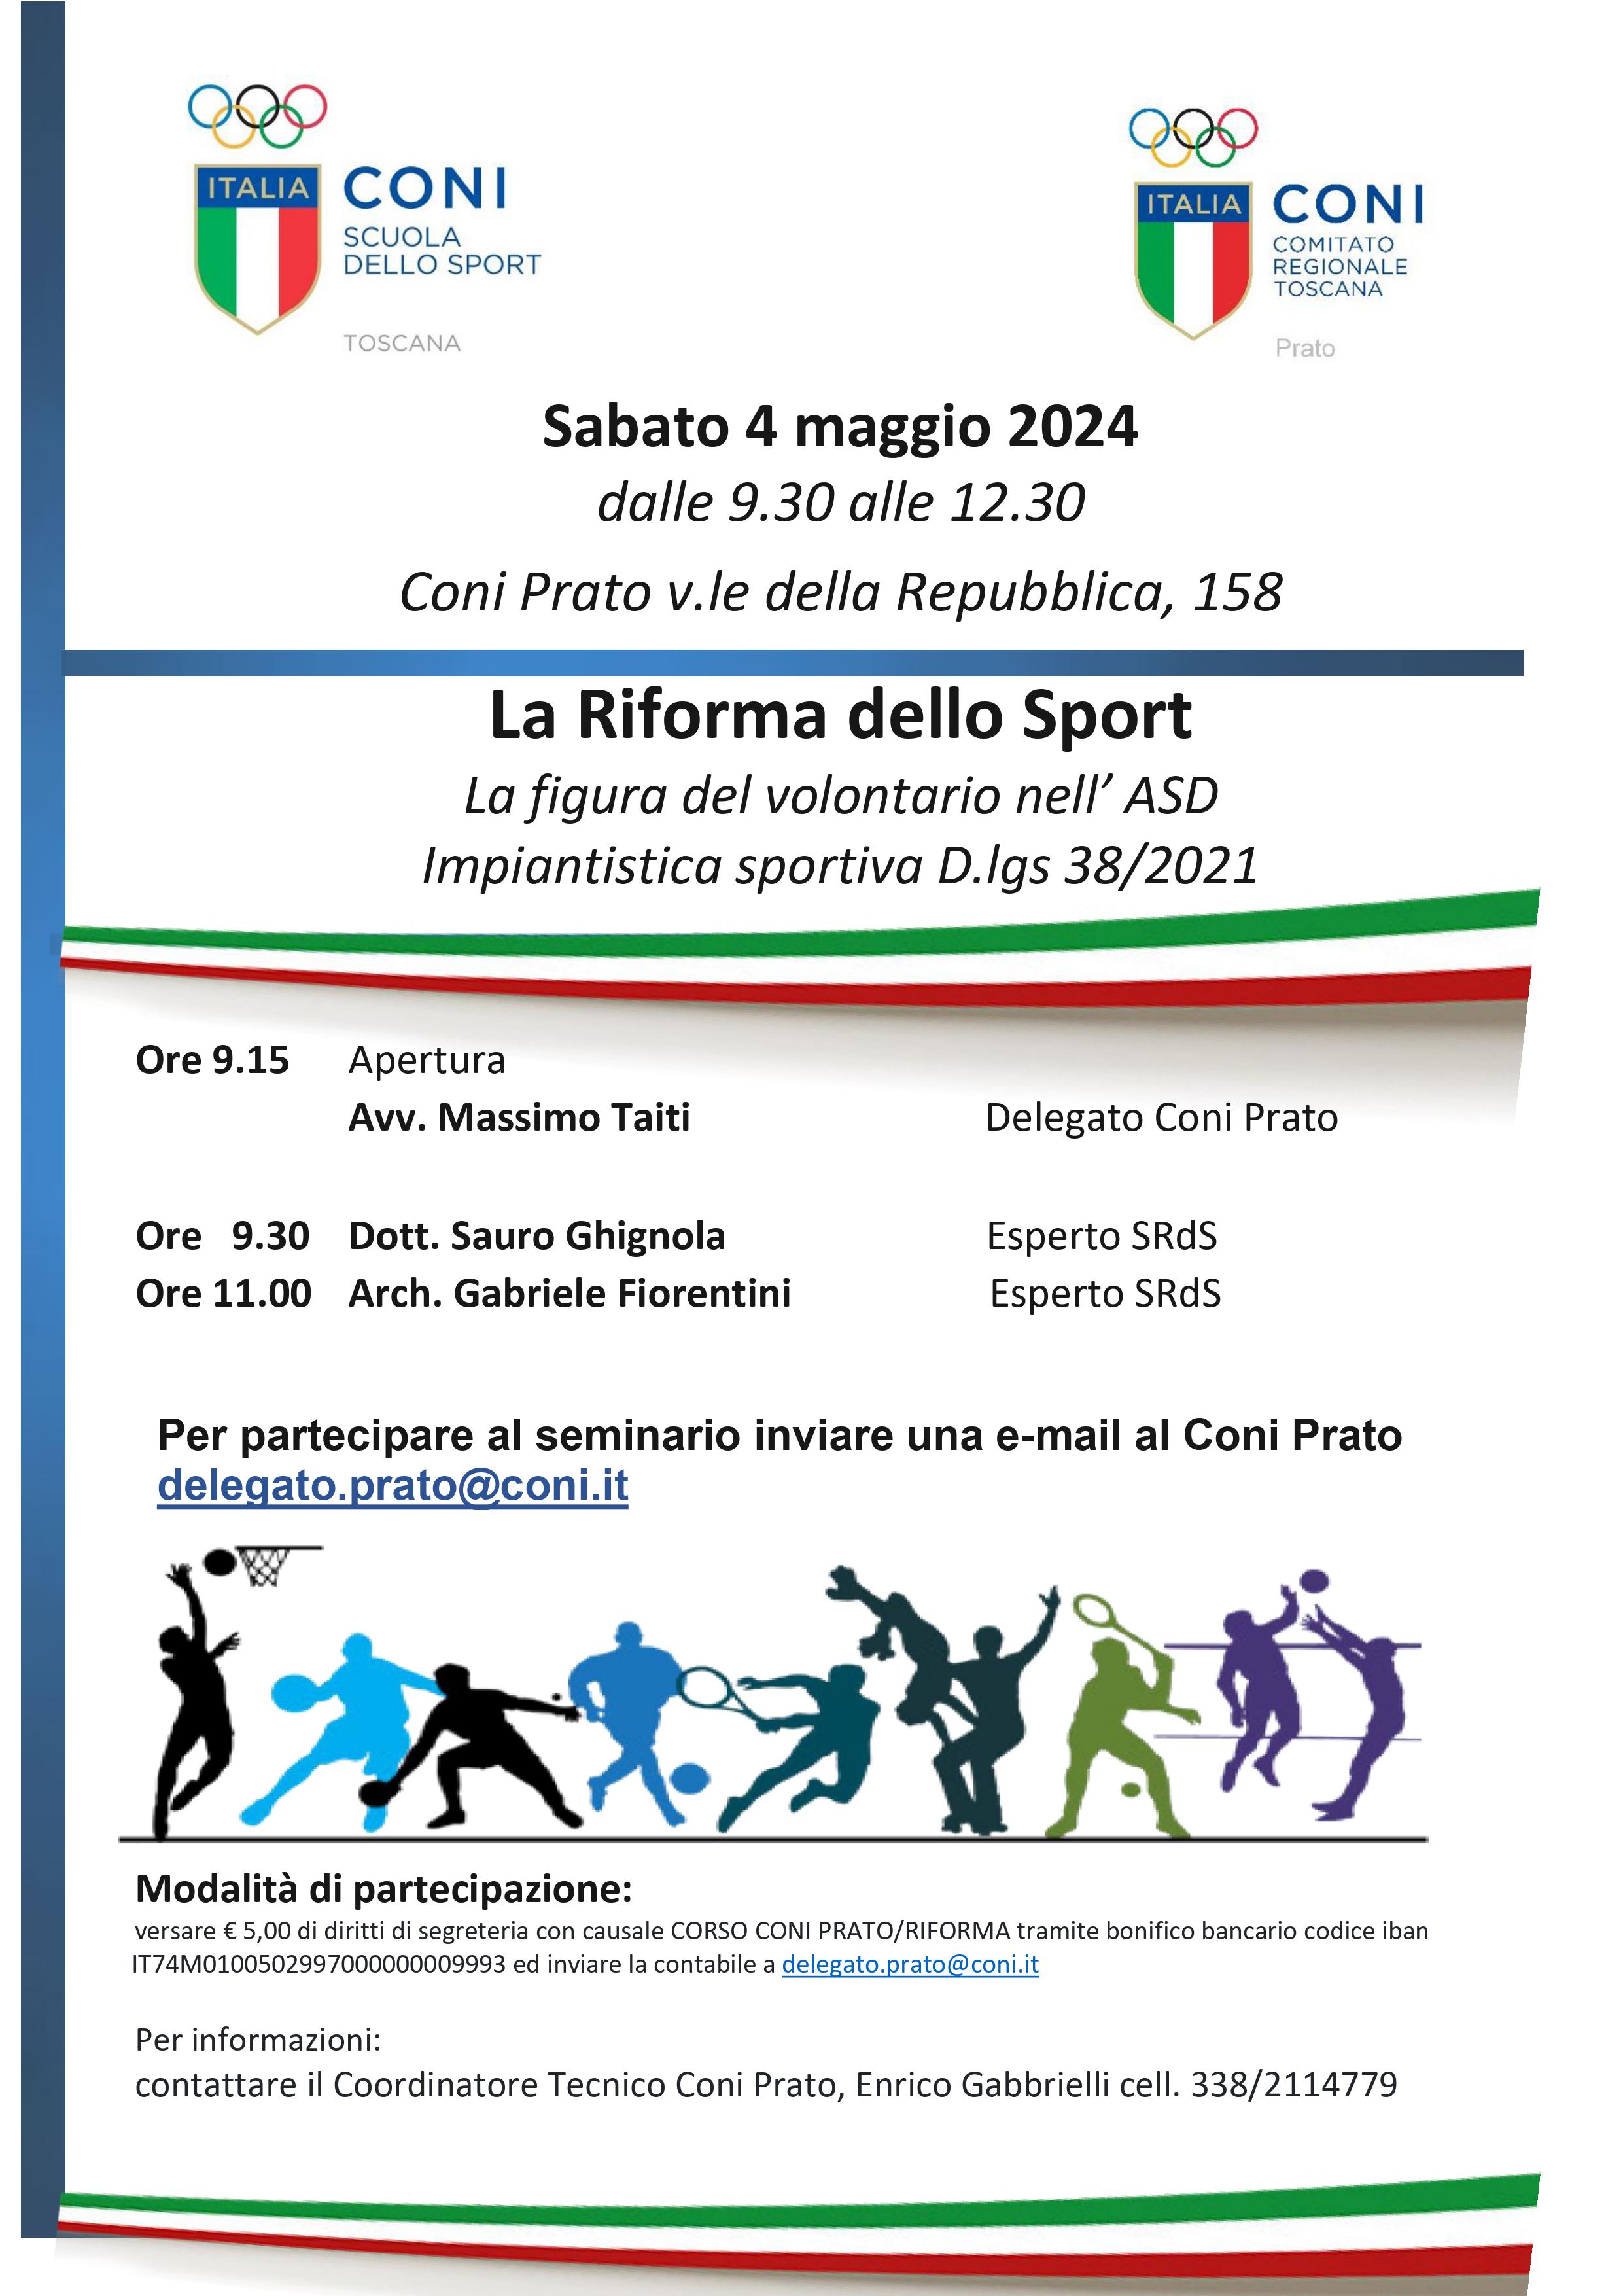 Impiantistica sportiva: normative e opportunità; il volontario nelle ASD - Prato